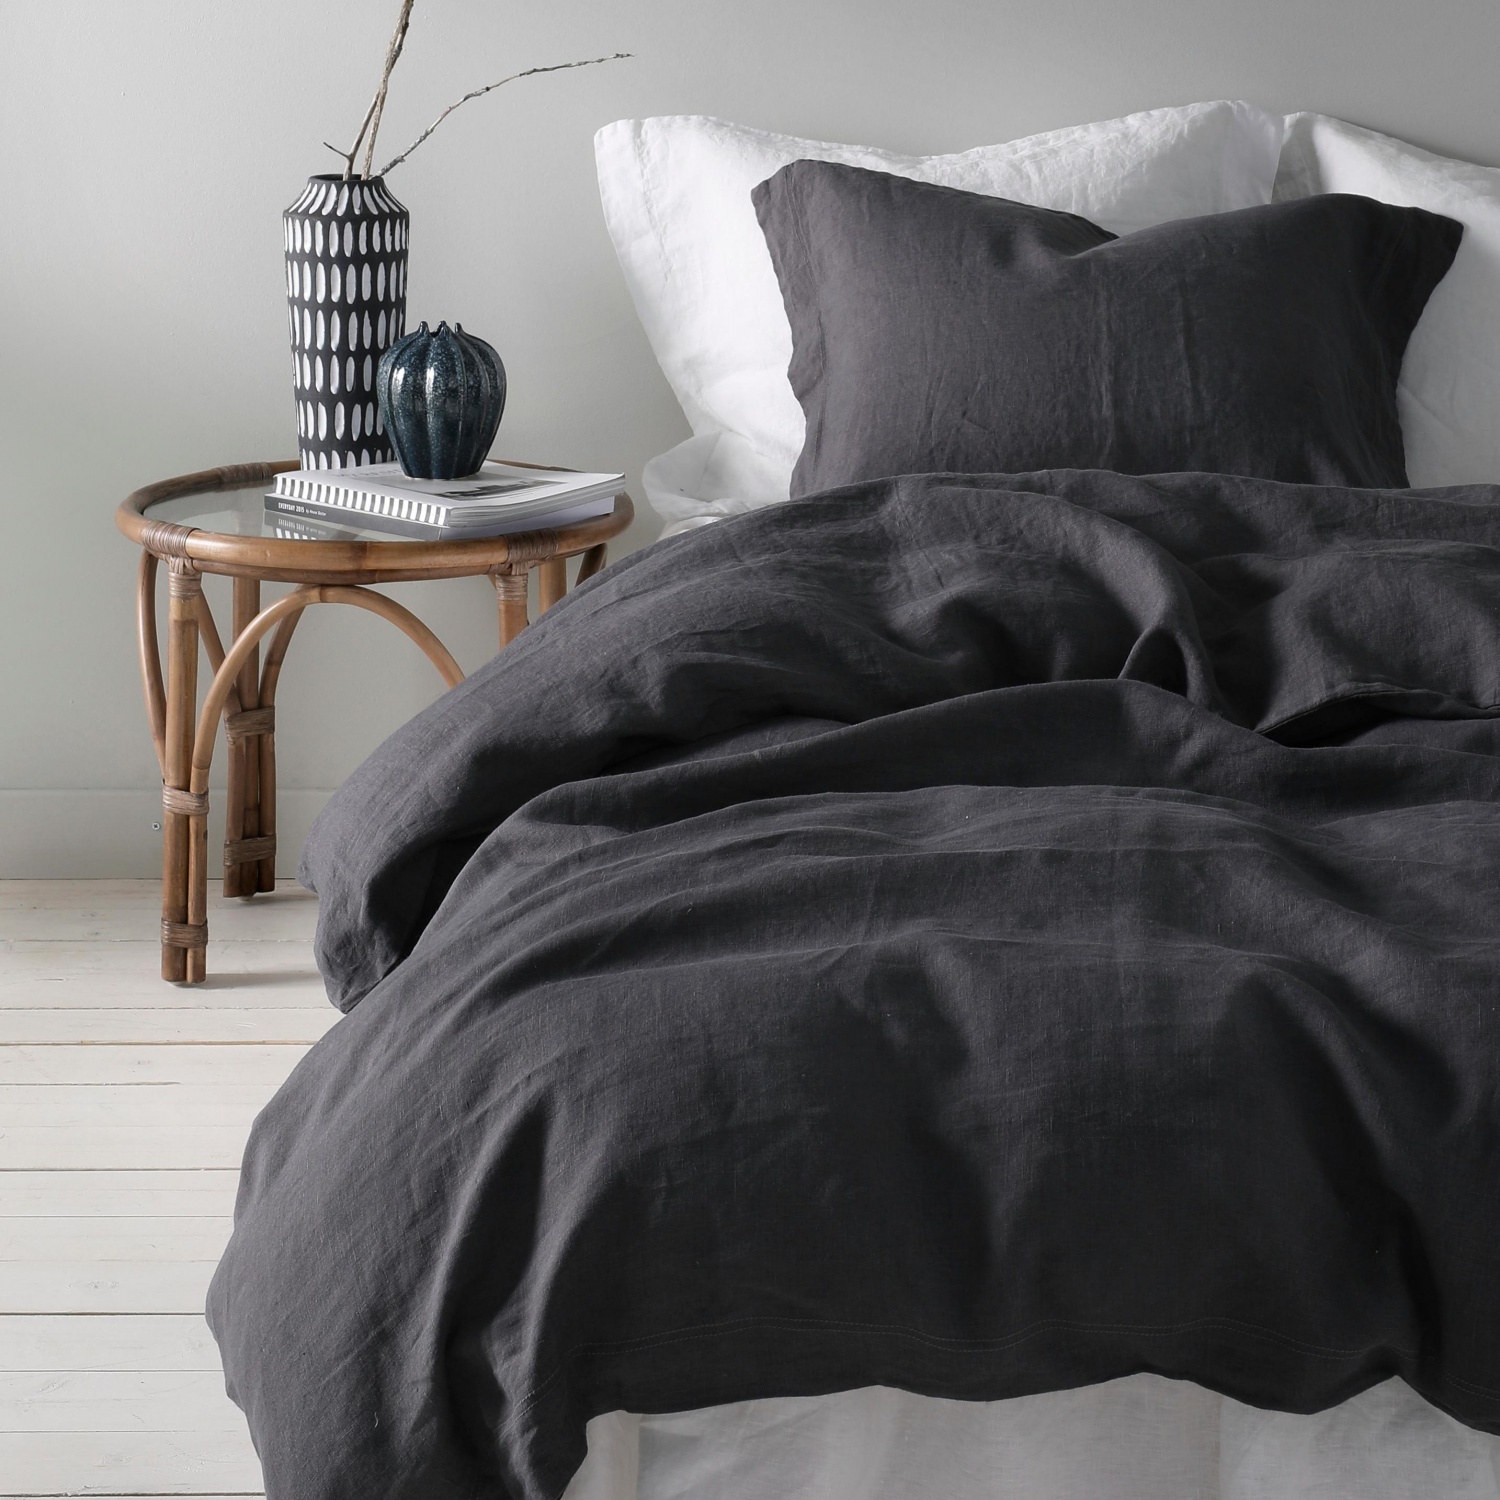 Du vil ikke sove i noe annet når du har prøvd dette nydelige silkemyke sengetøyet i bambus charcoal fra badaboom